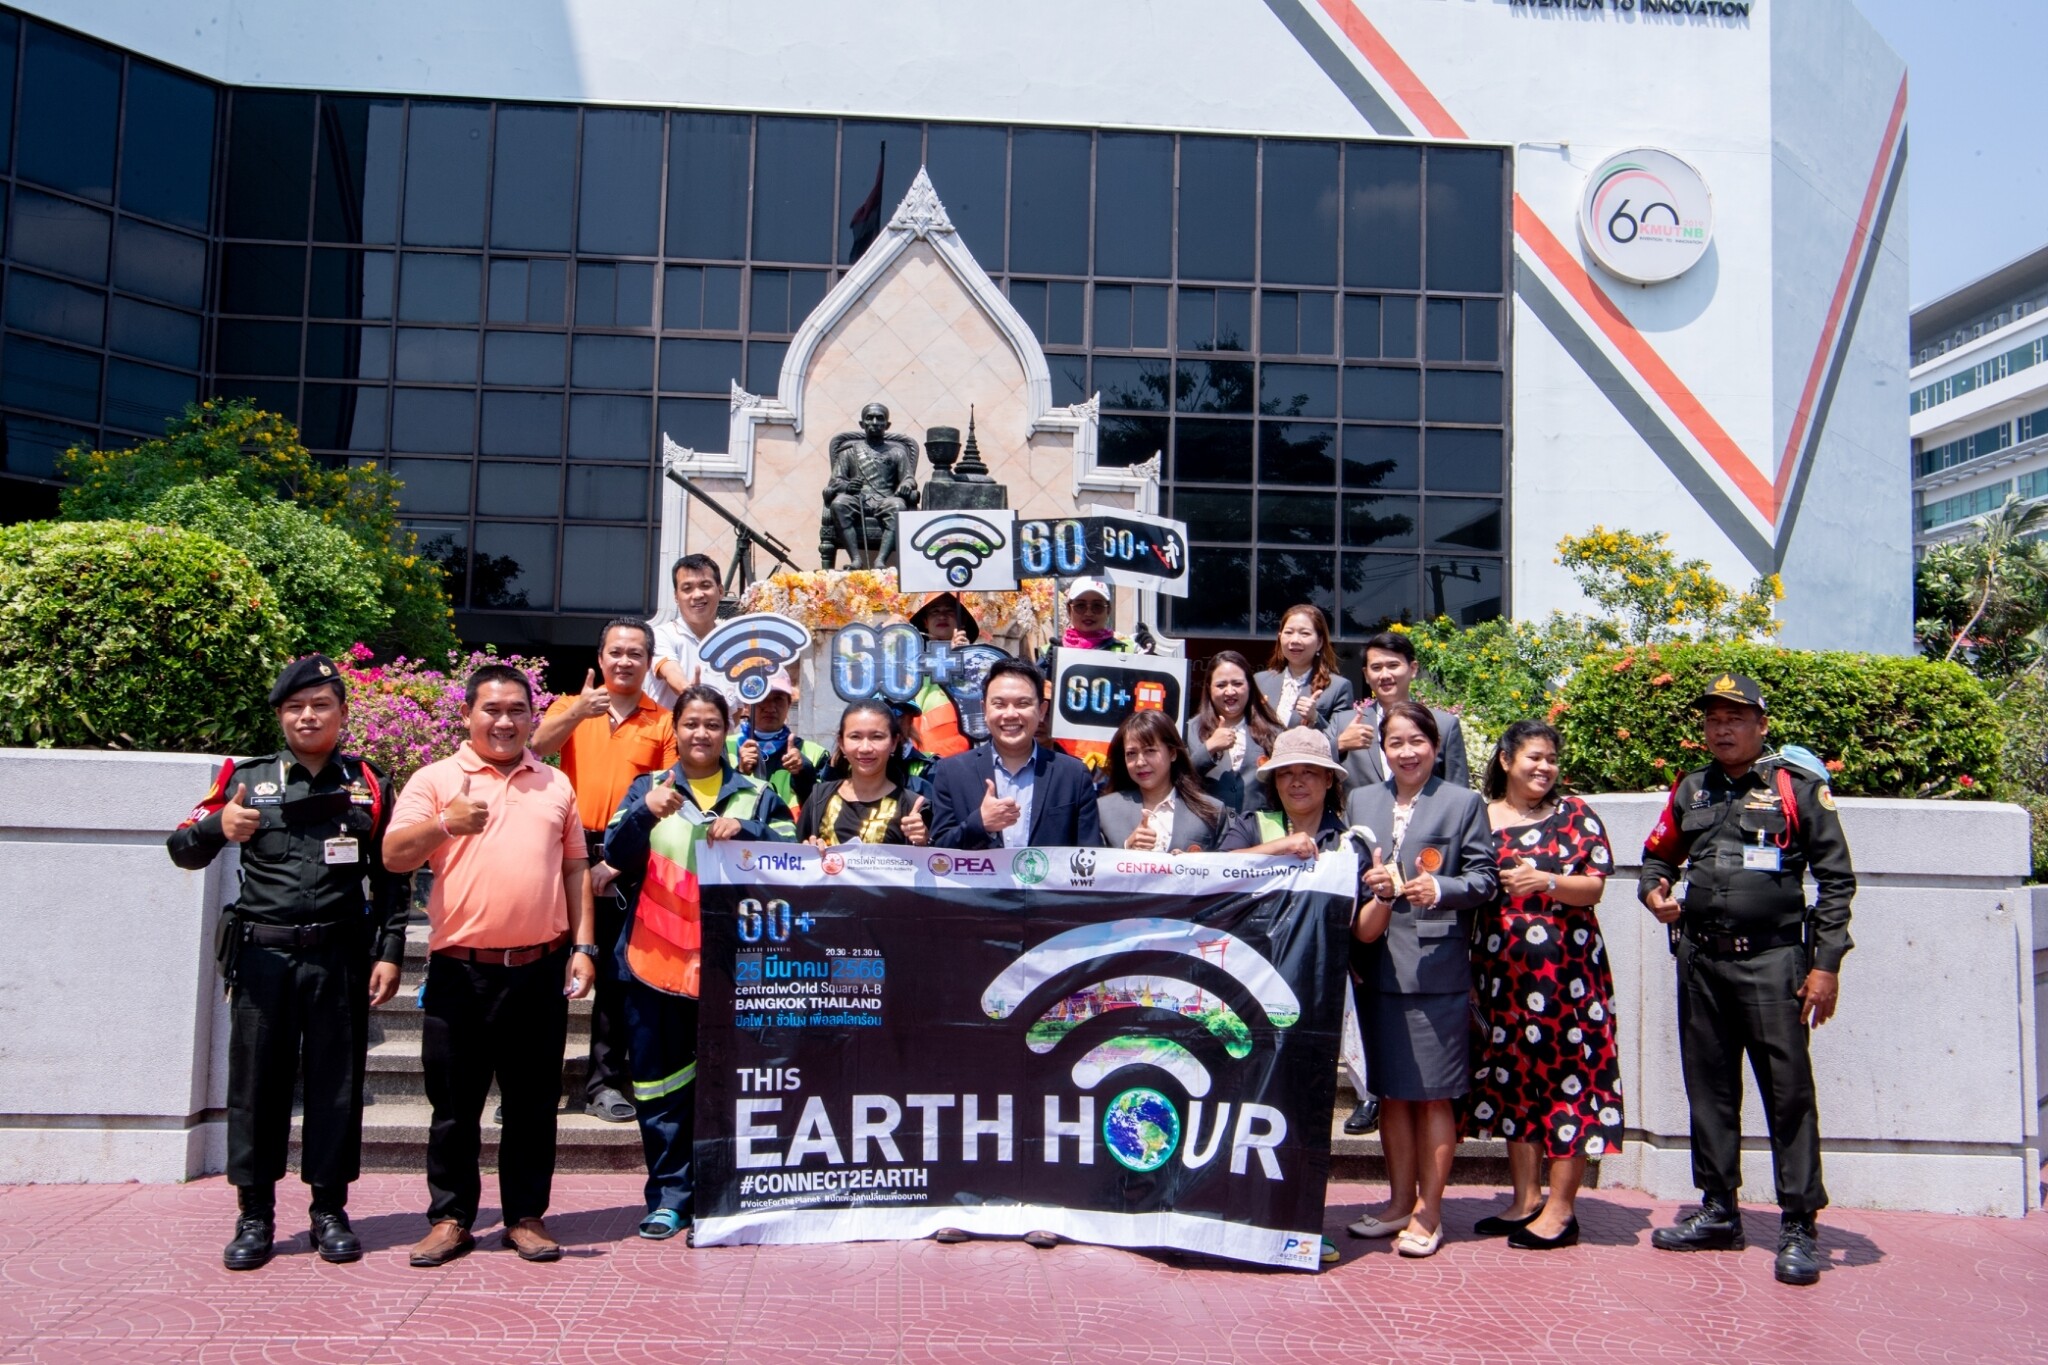 มจพ. ขานรับและร่วมมือรณรงค์ปิดไฟ 1 ชั่วโมง เพื่อลดโลกร้อน (60+ Earth Hour 2023) จากสำนักงานเขตบางซื่อ